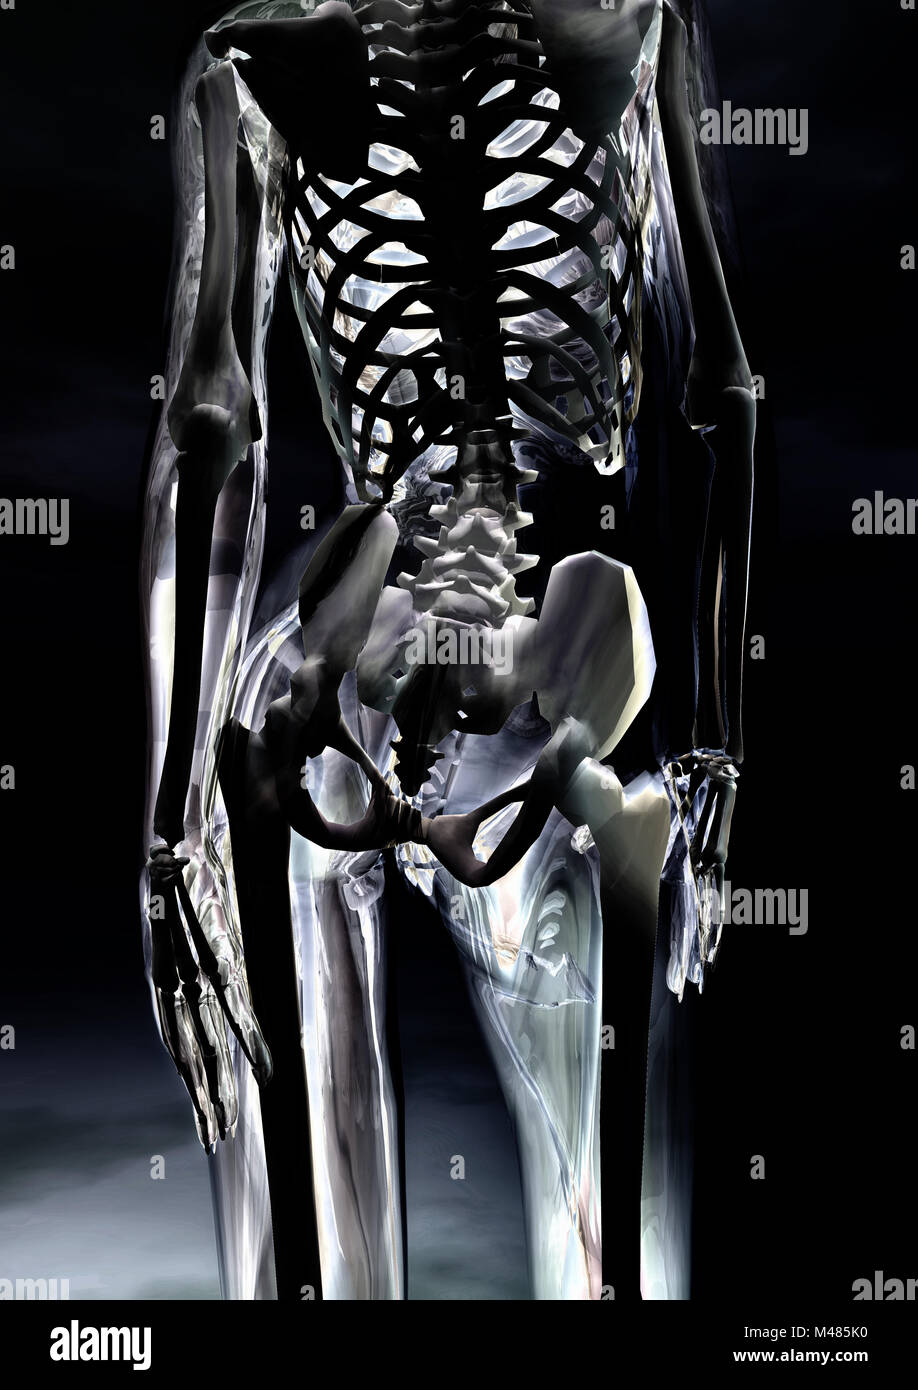 Gläserner weiblicher Körper - Glassy female body Stock Photo